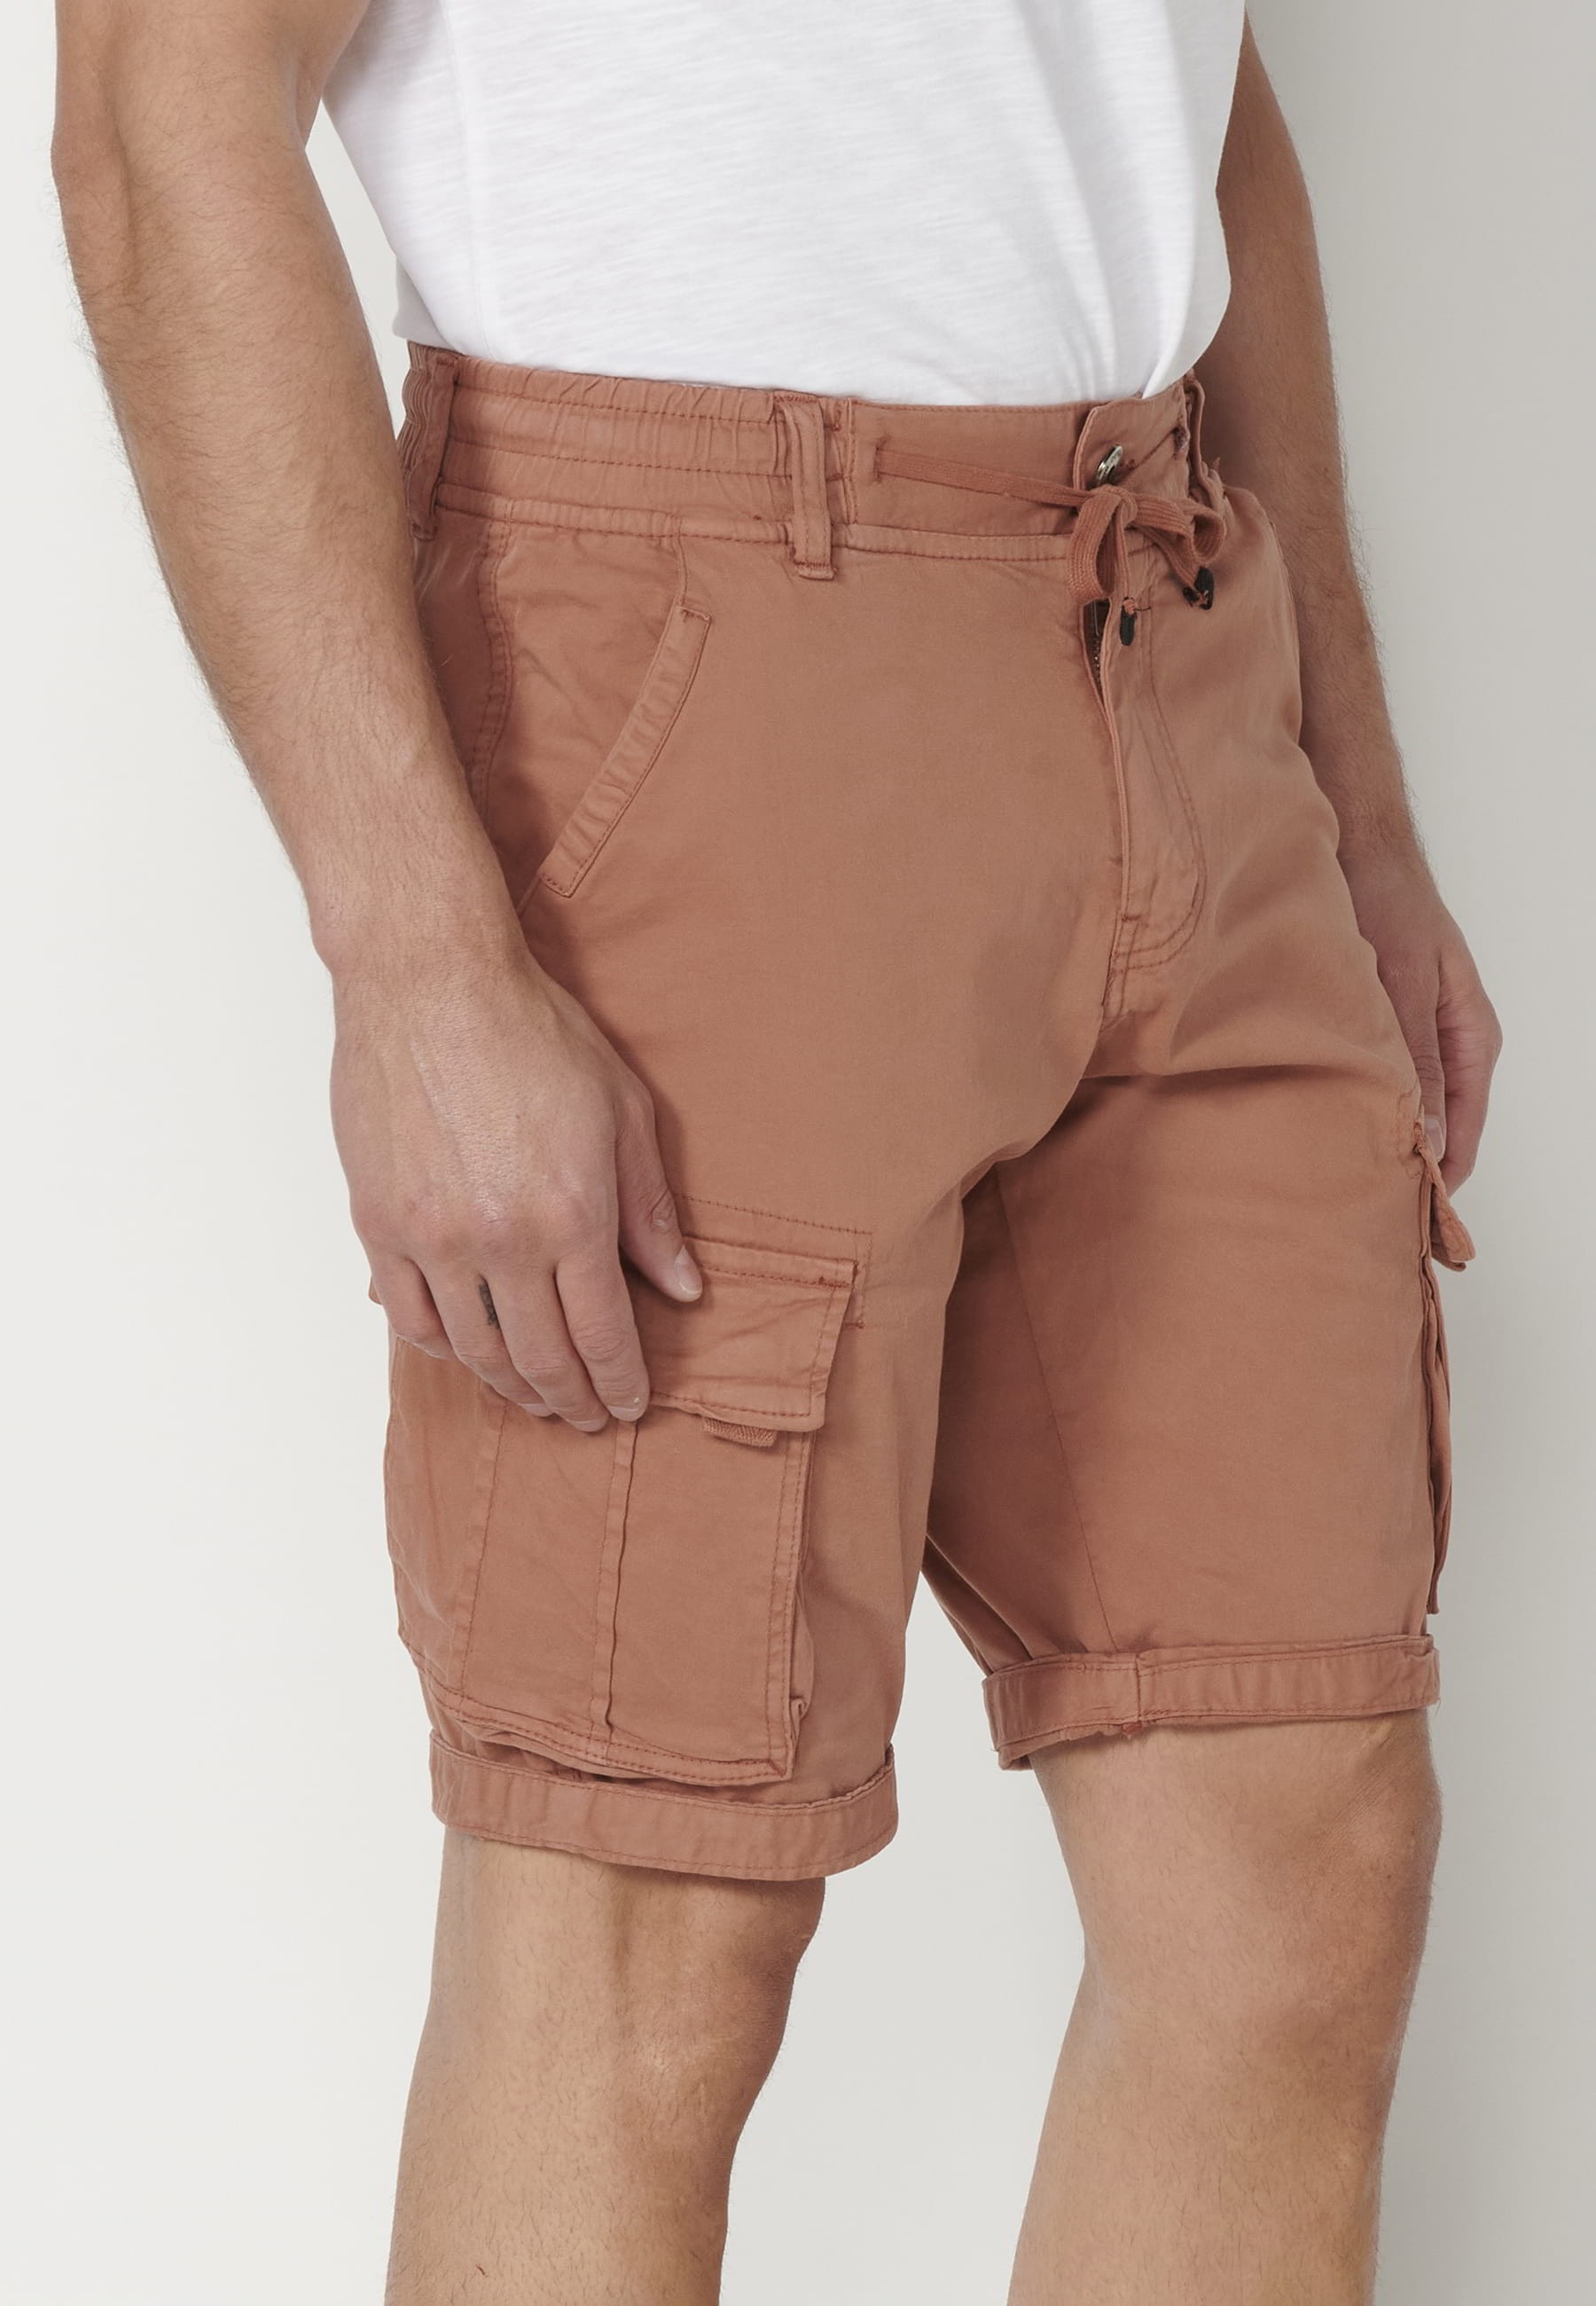 Bermuda cargo style shorts in Teja color for Men